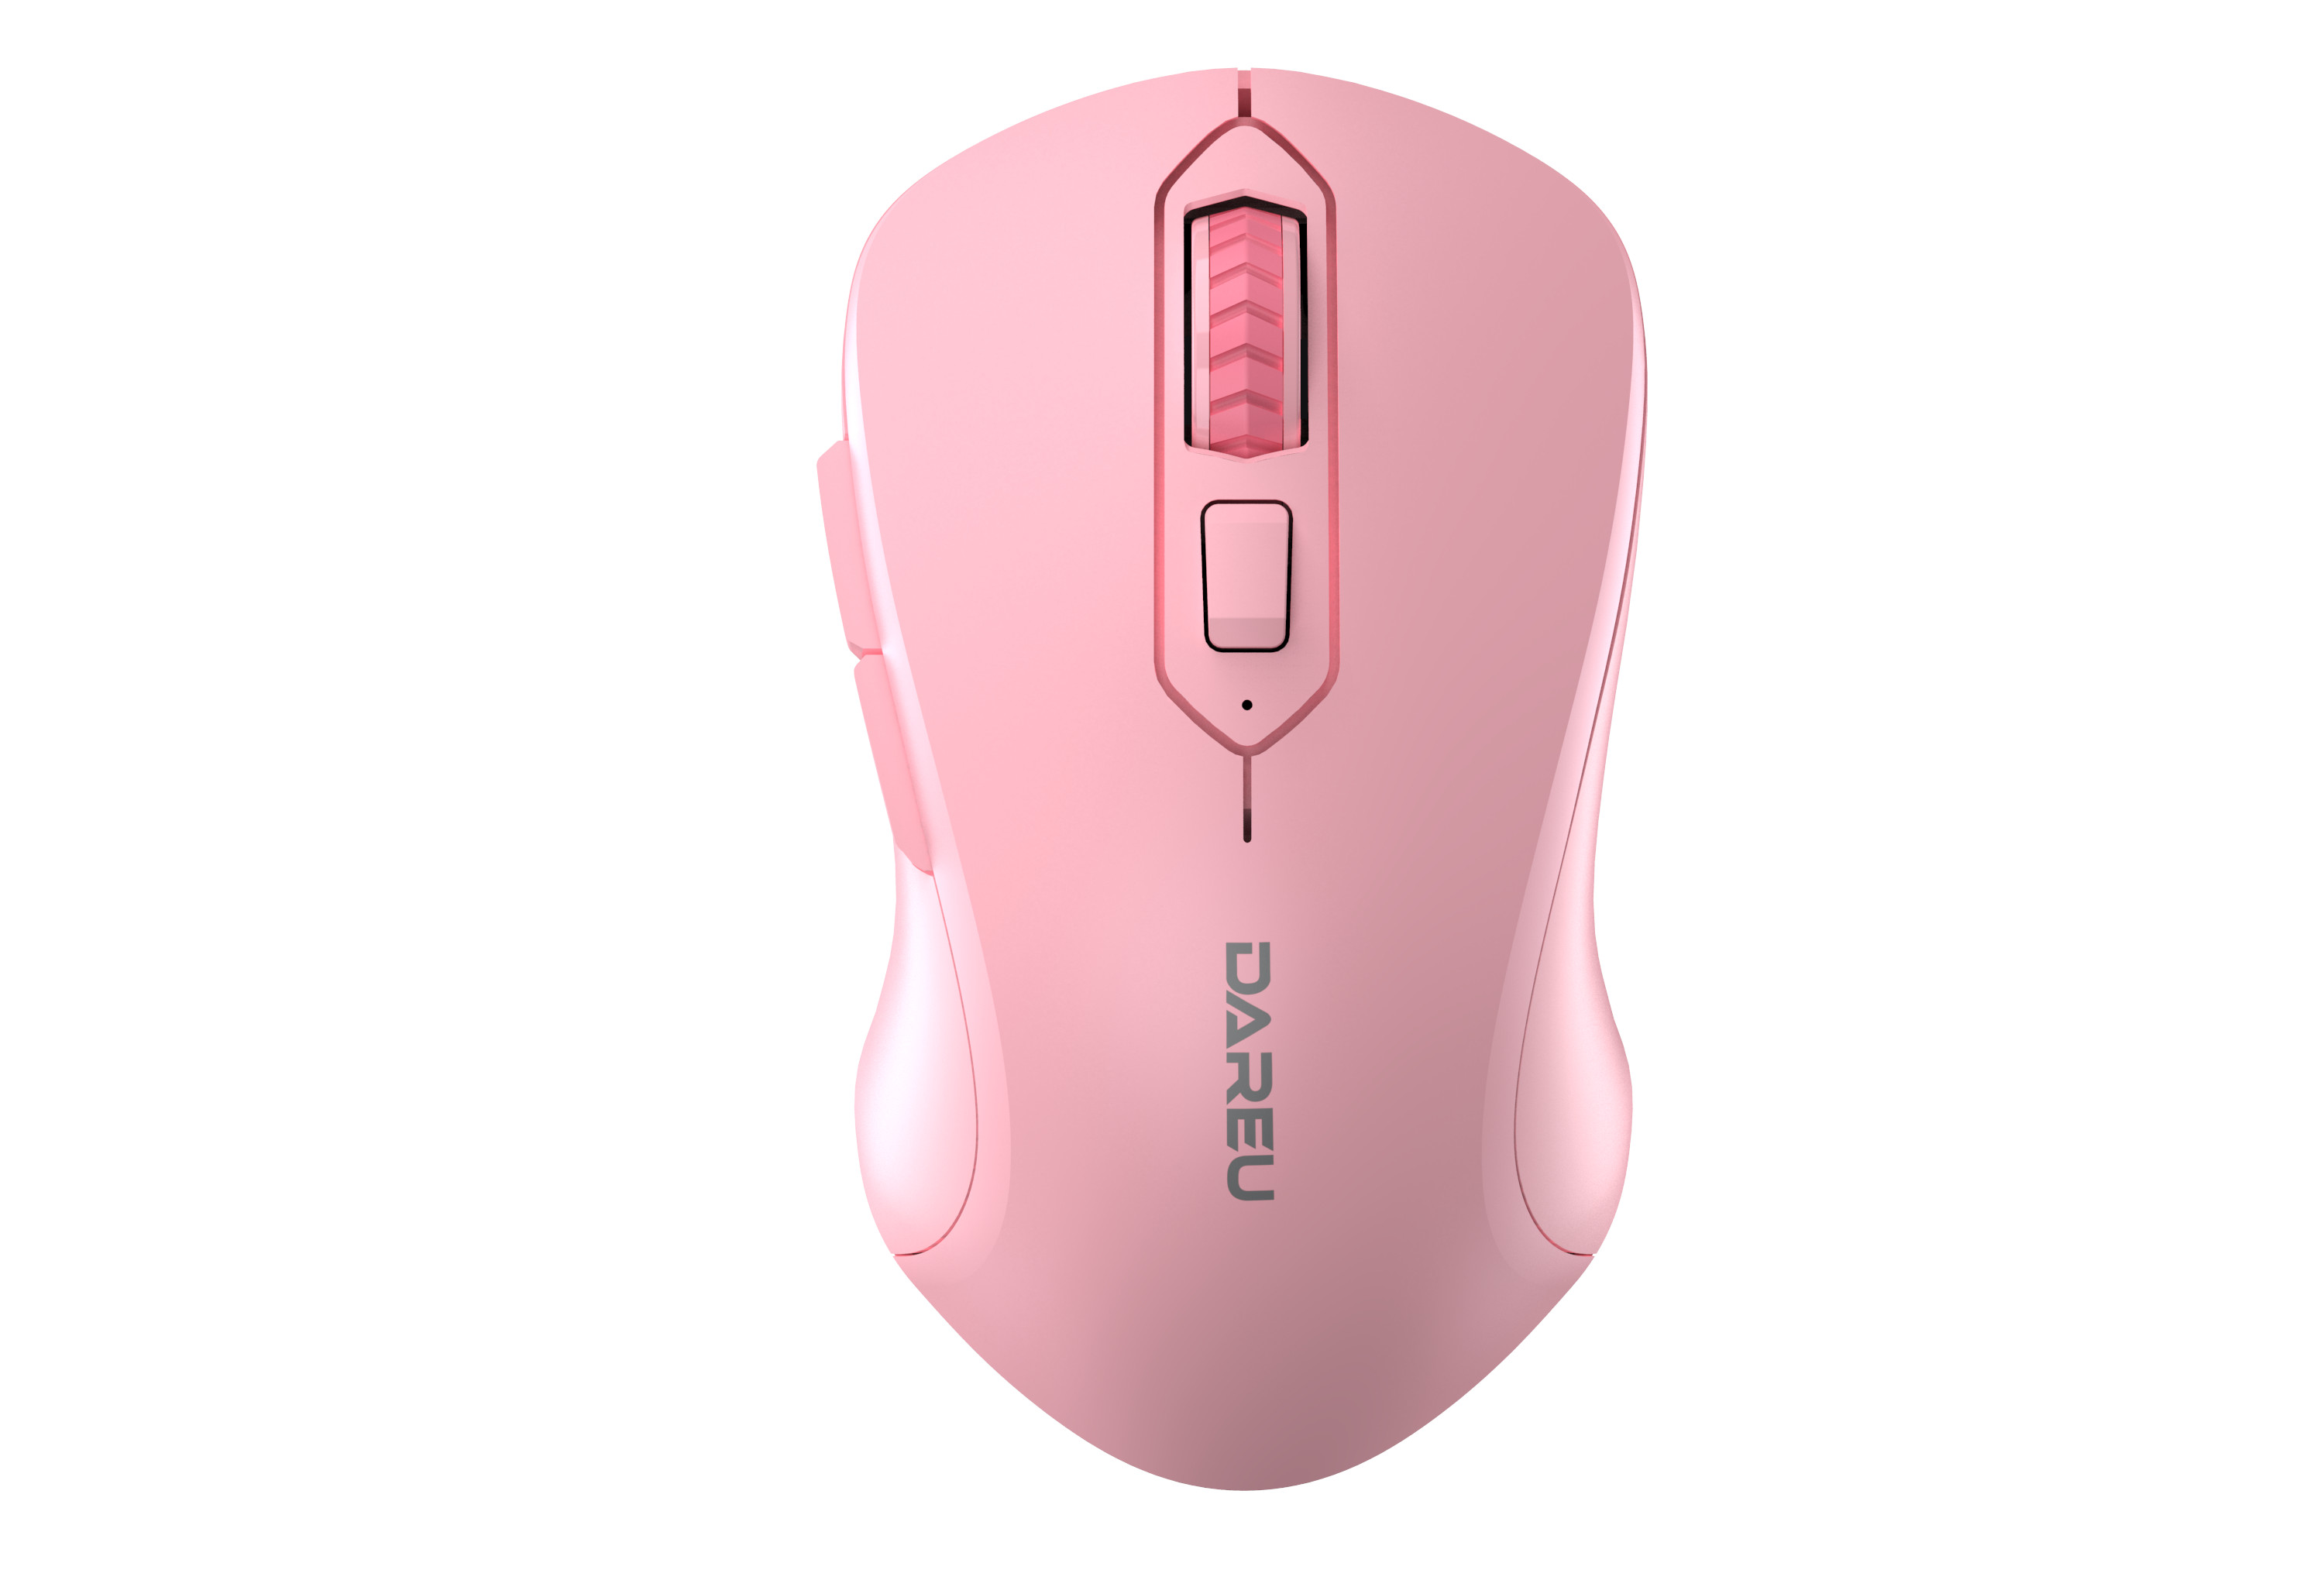 Chuột không dây Dareu LM115B Silent ( BT + Wireless ) - Hồng Pink